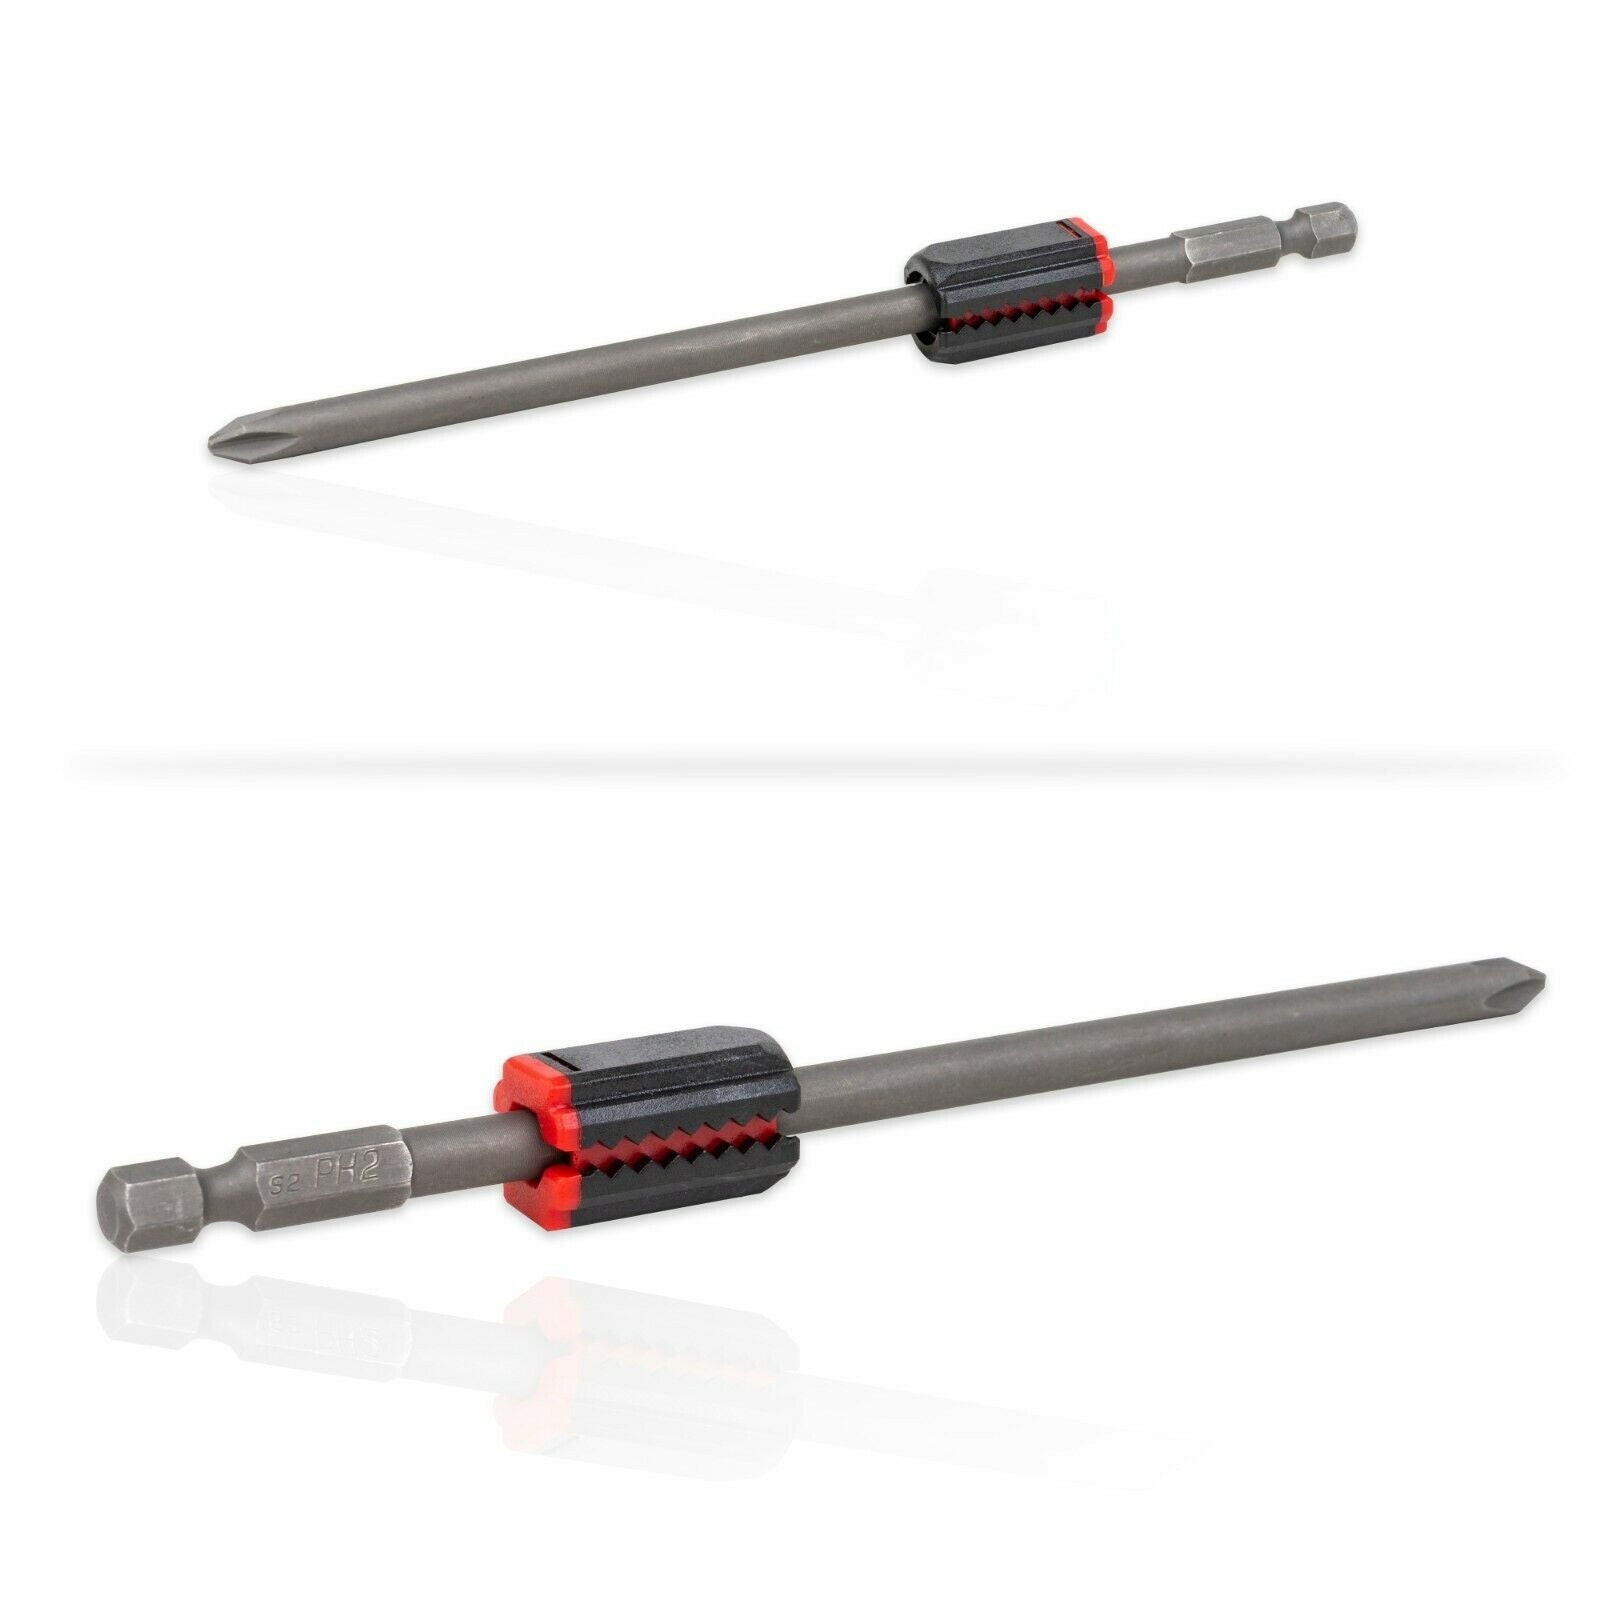 2pc TGR Bit Magnetizer Ring | Auto Adjustable up to 6.35mm (1/4") Shank Bits | Magnetic Screwdriver Bit Holder